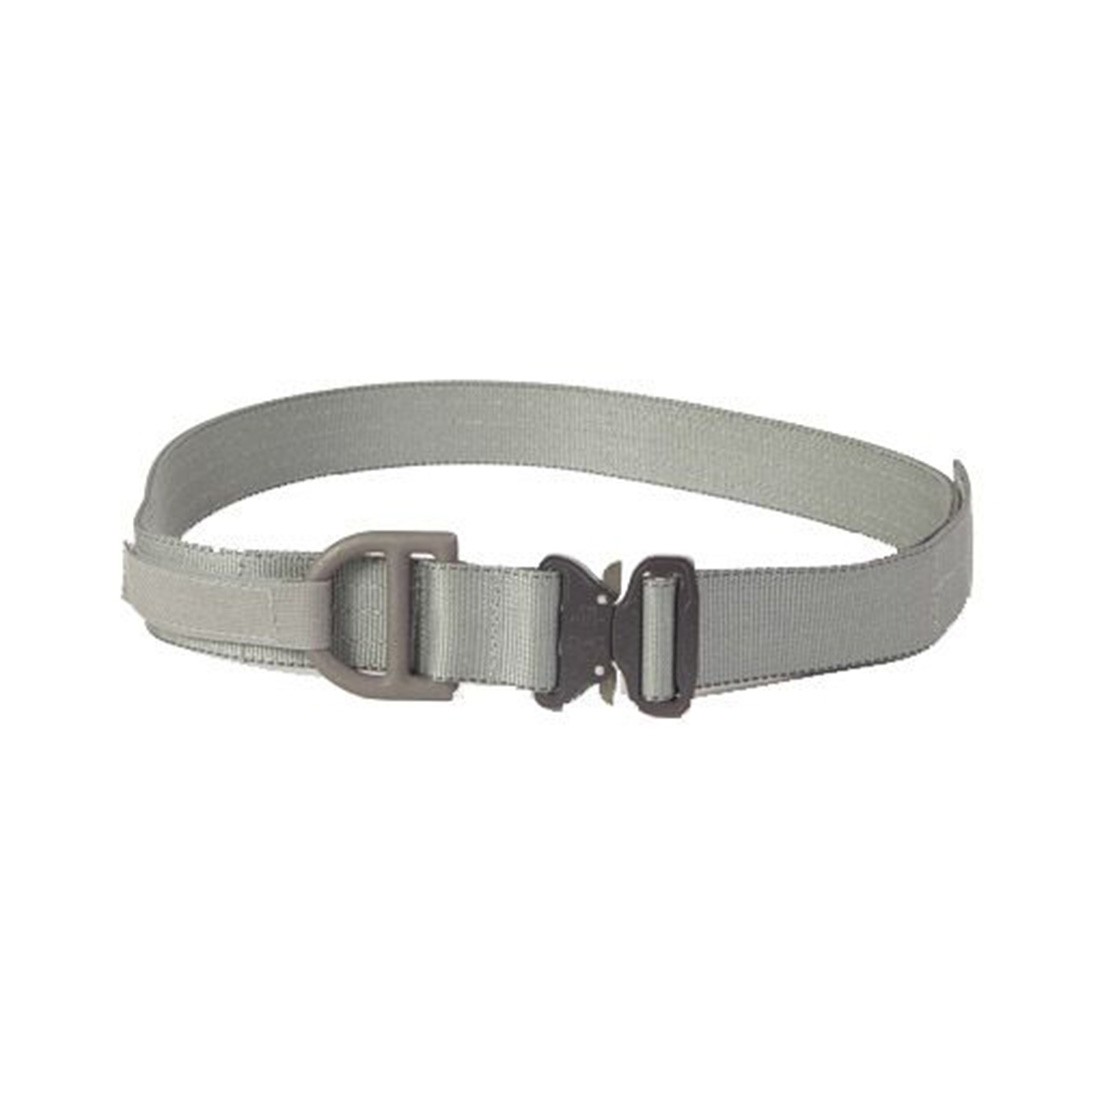 HSGI Cobra Rigger Belt - 1.75" - L (Grey)